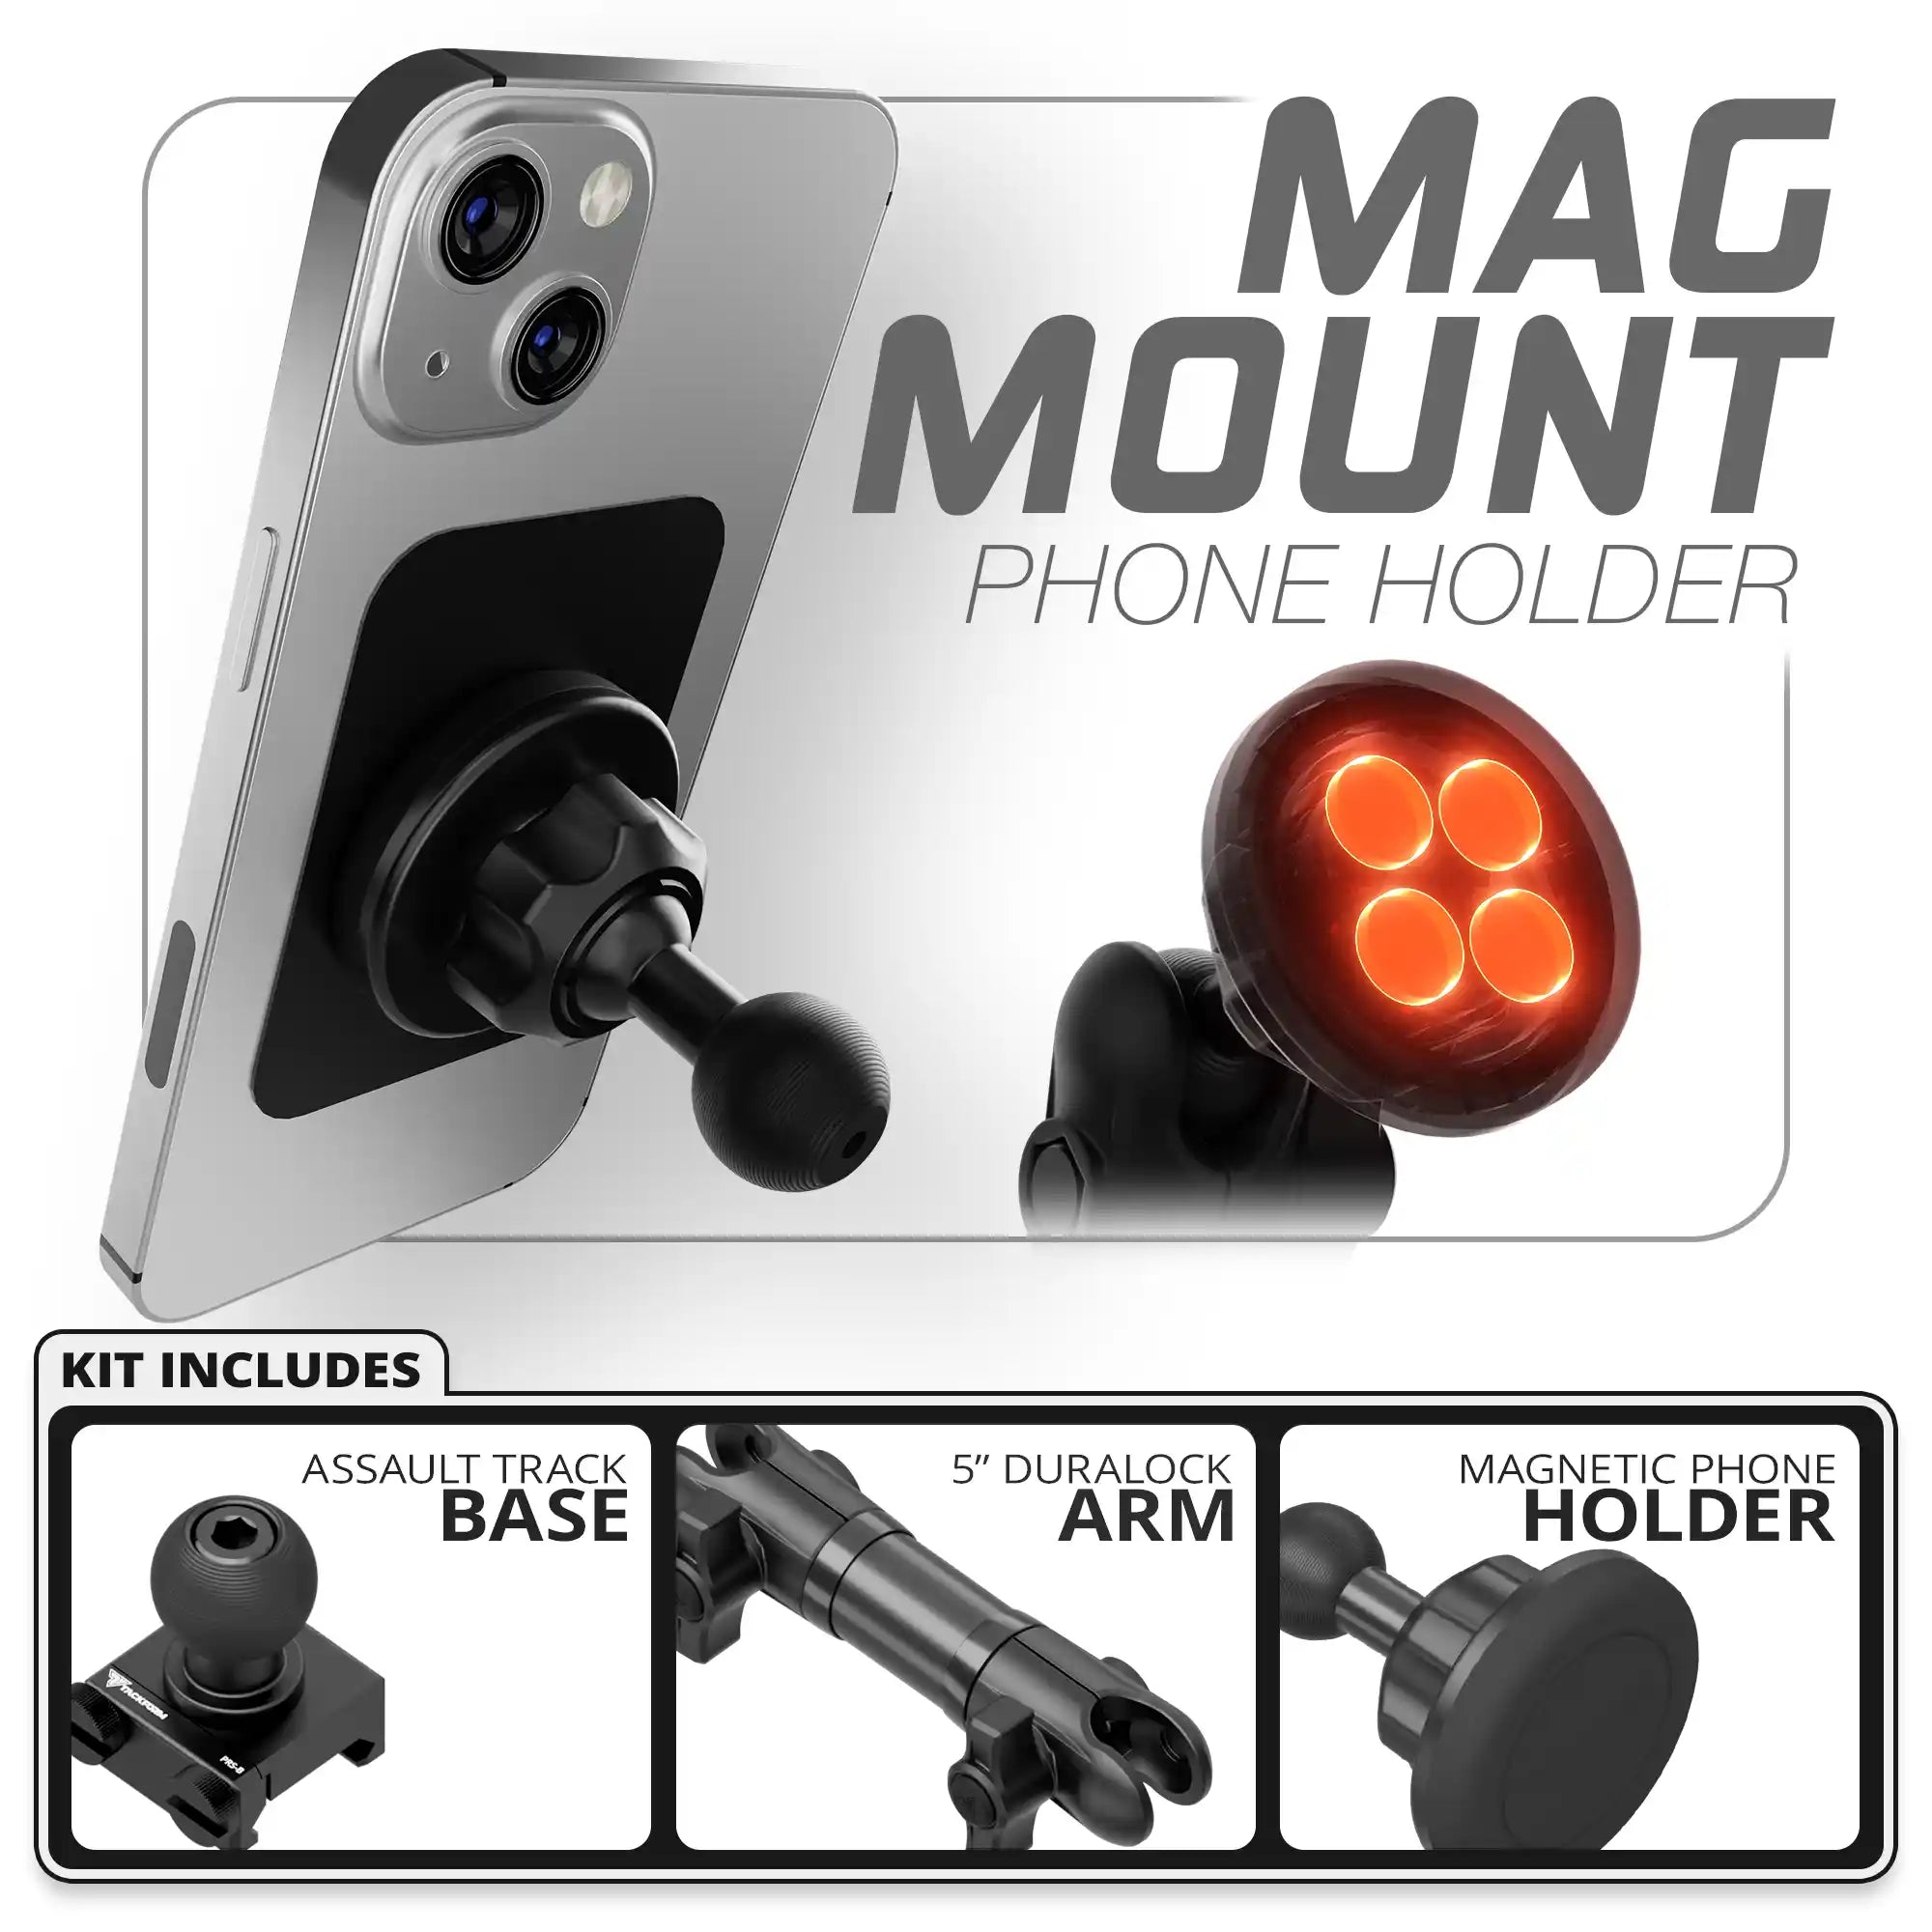 Magnetic Phone Holder | Assault Track Base | 5" DuraLock Arm